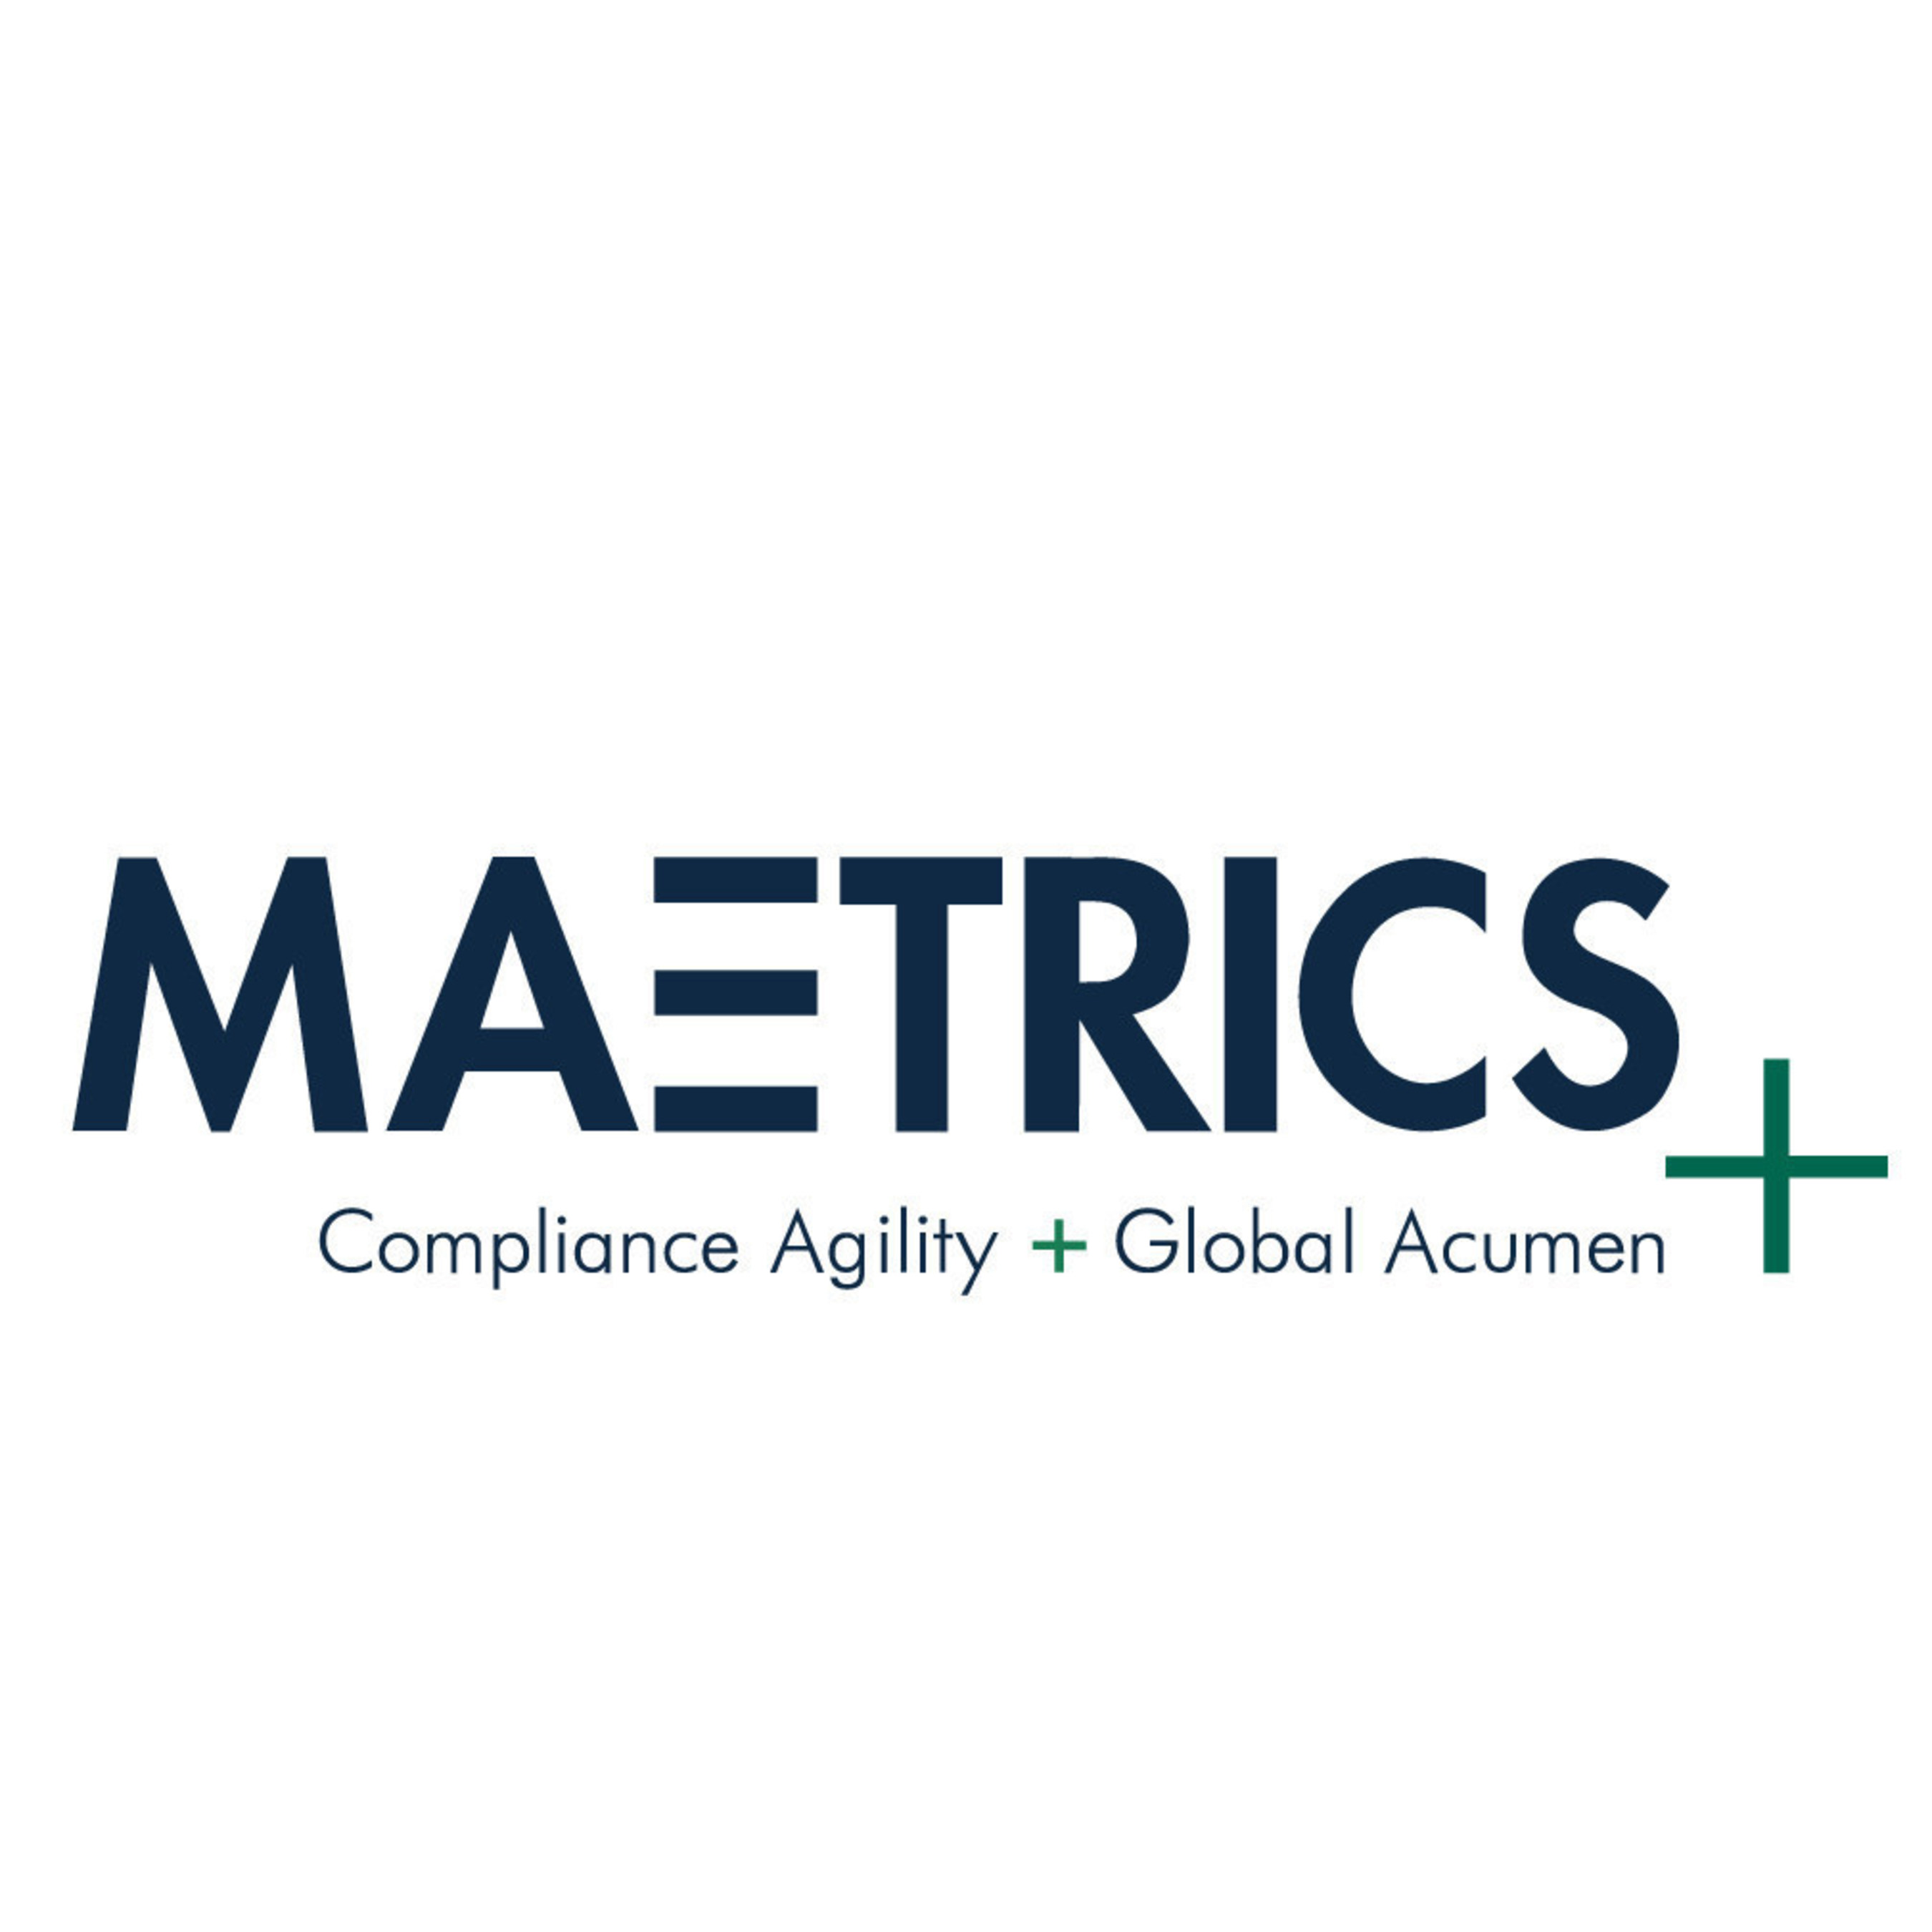 Maetrics | Compliance Agility + Global Acumen